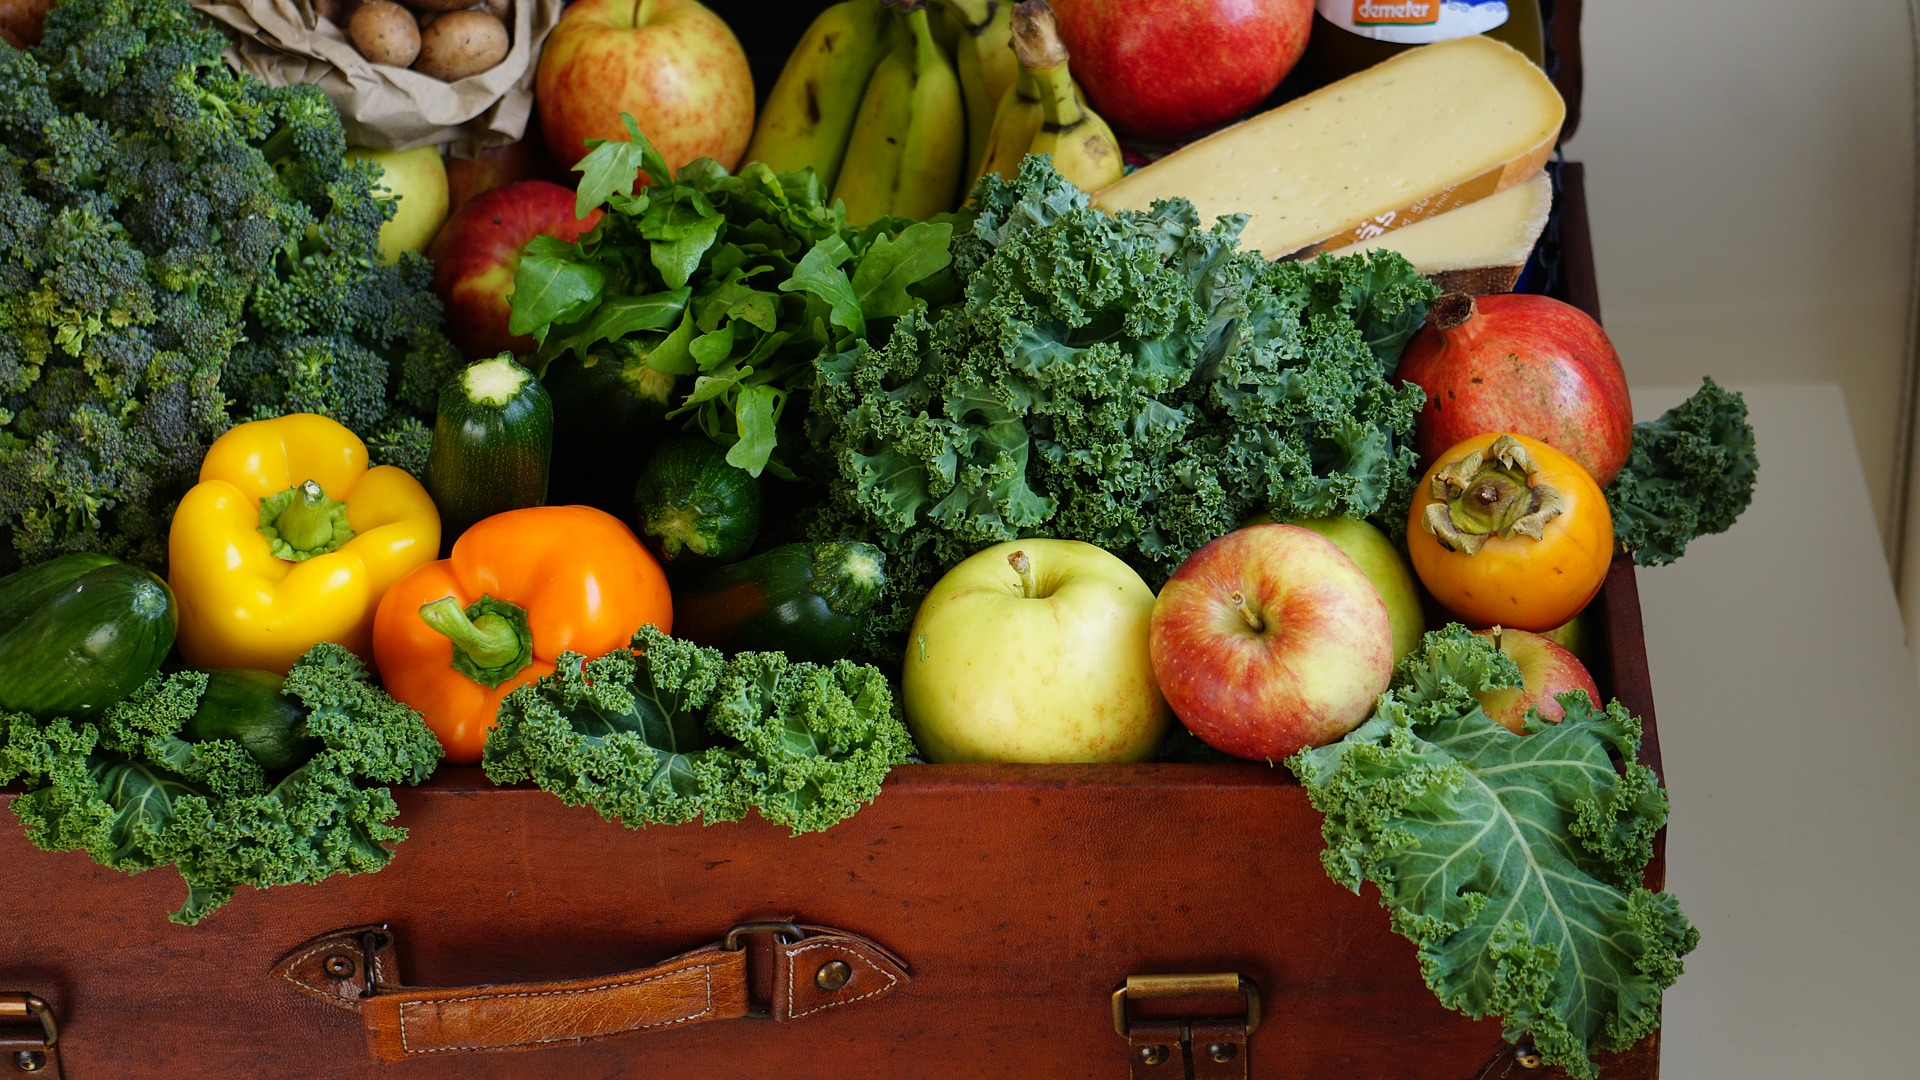 Gemüse und Obst in einem geöffneten Koffer